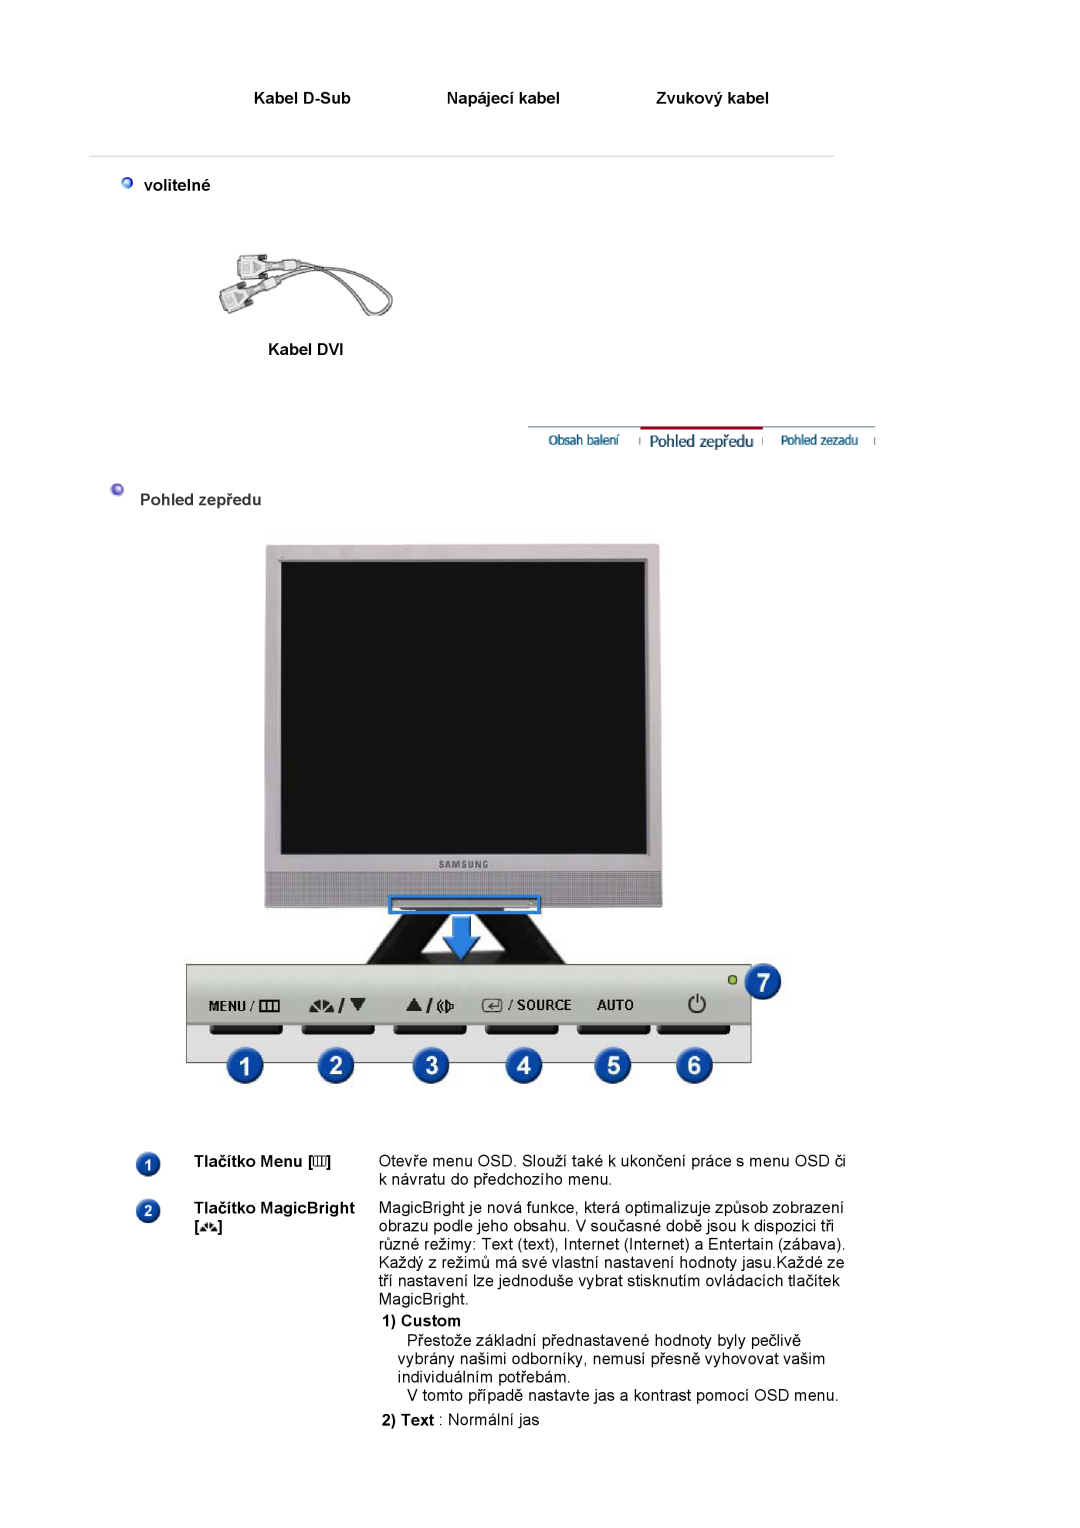 Samsung LS19MJSTS7/EDC manual Kabel D-Sub, Napájecí kabel, Zvukový kabel, volitelné Kabel DVI, Pohled zepĜedu, Custom 